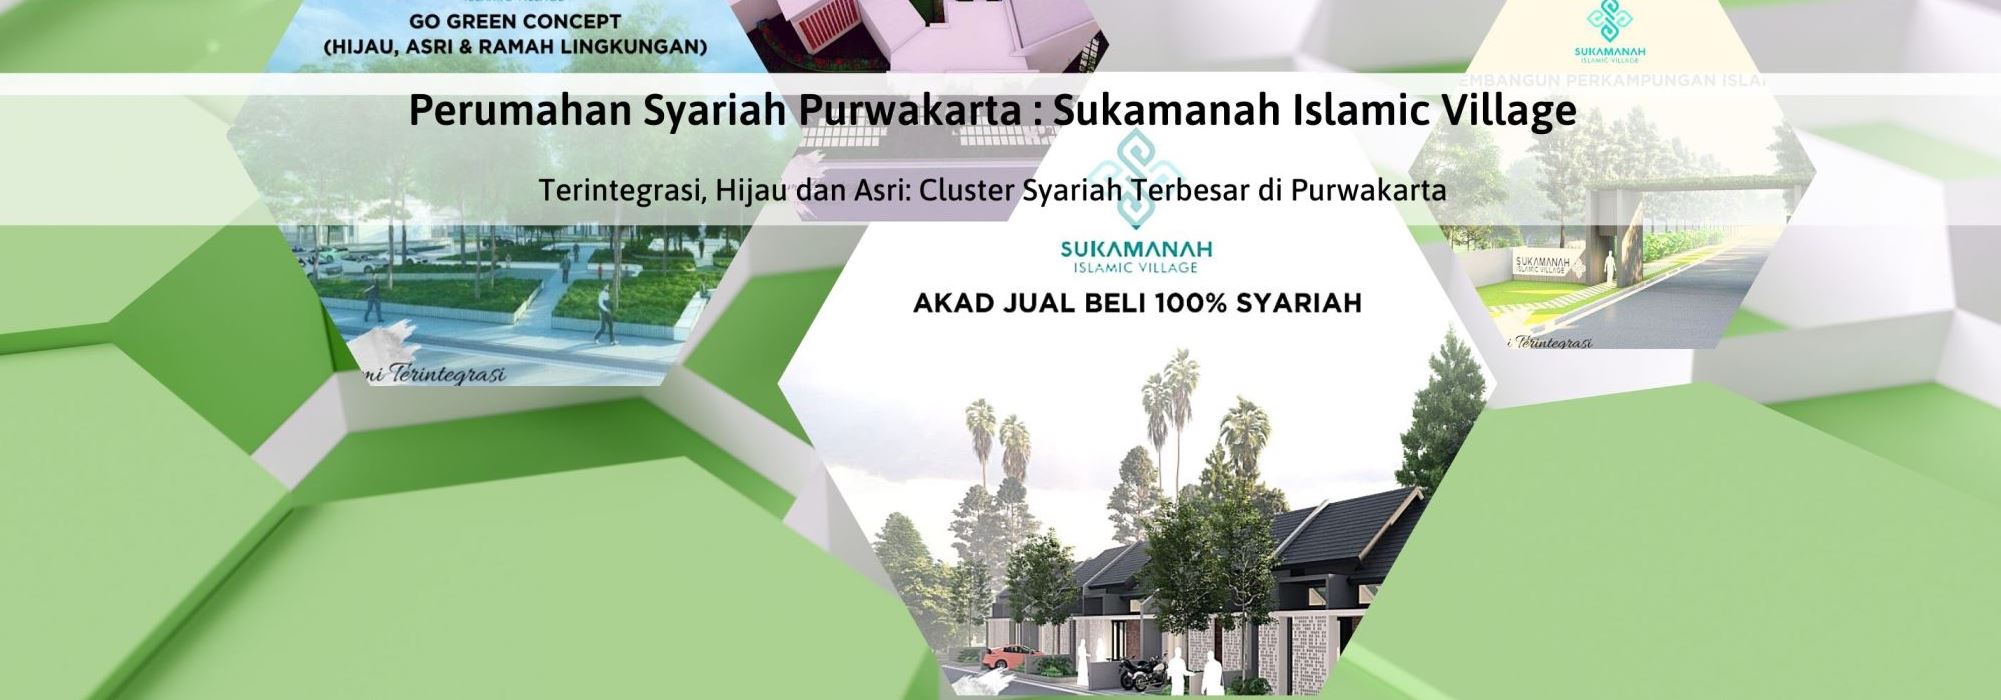 slider depan 2000x700 Sukamanah Islamic Village_v2